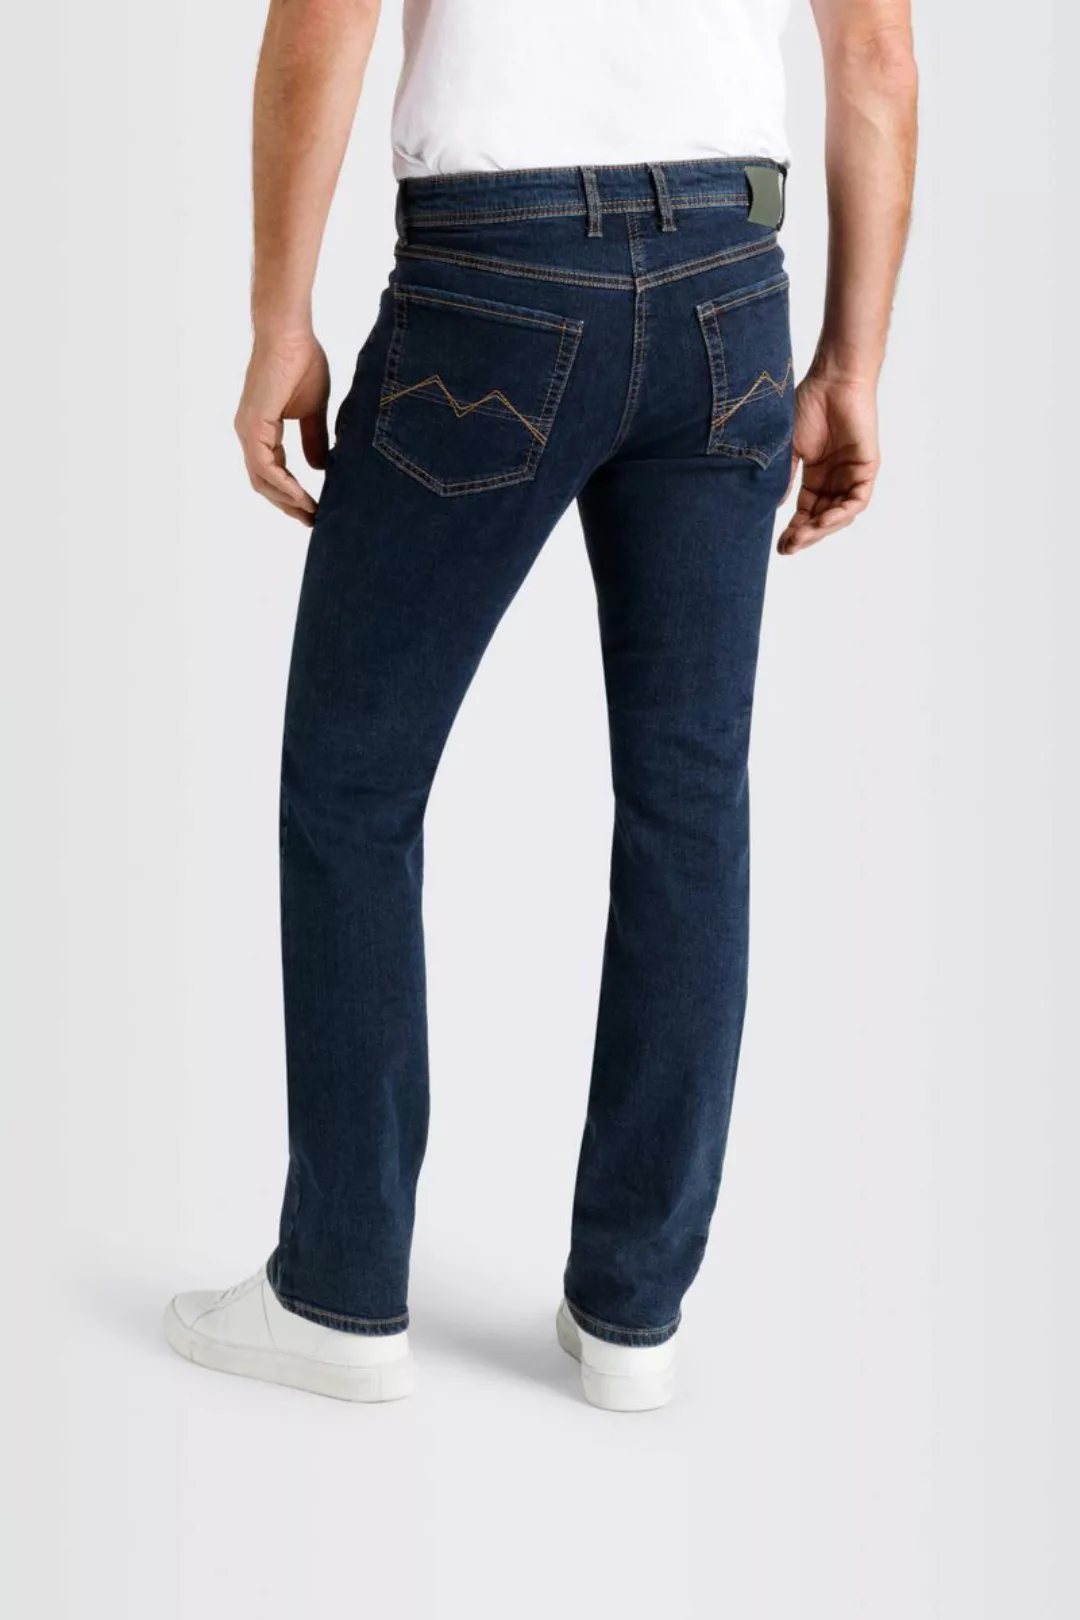 MAC Jeans Arne Pipe Deep Blau - Größe W 34 - L 36 günstig online kaufen